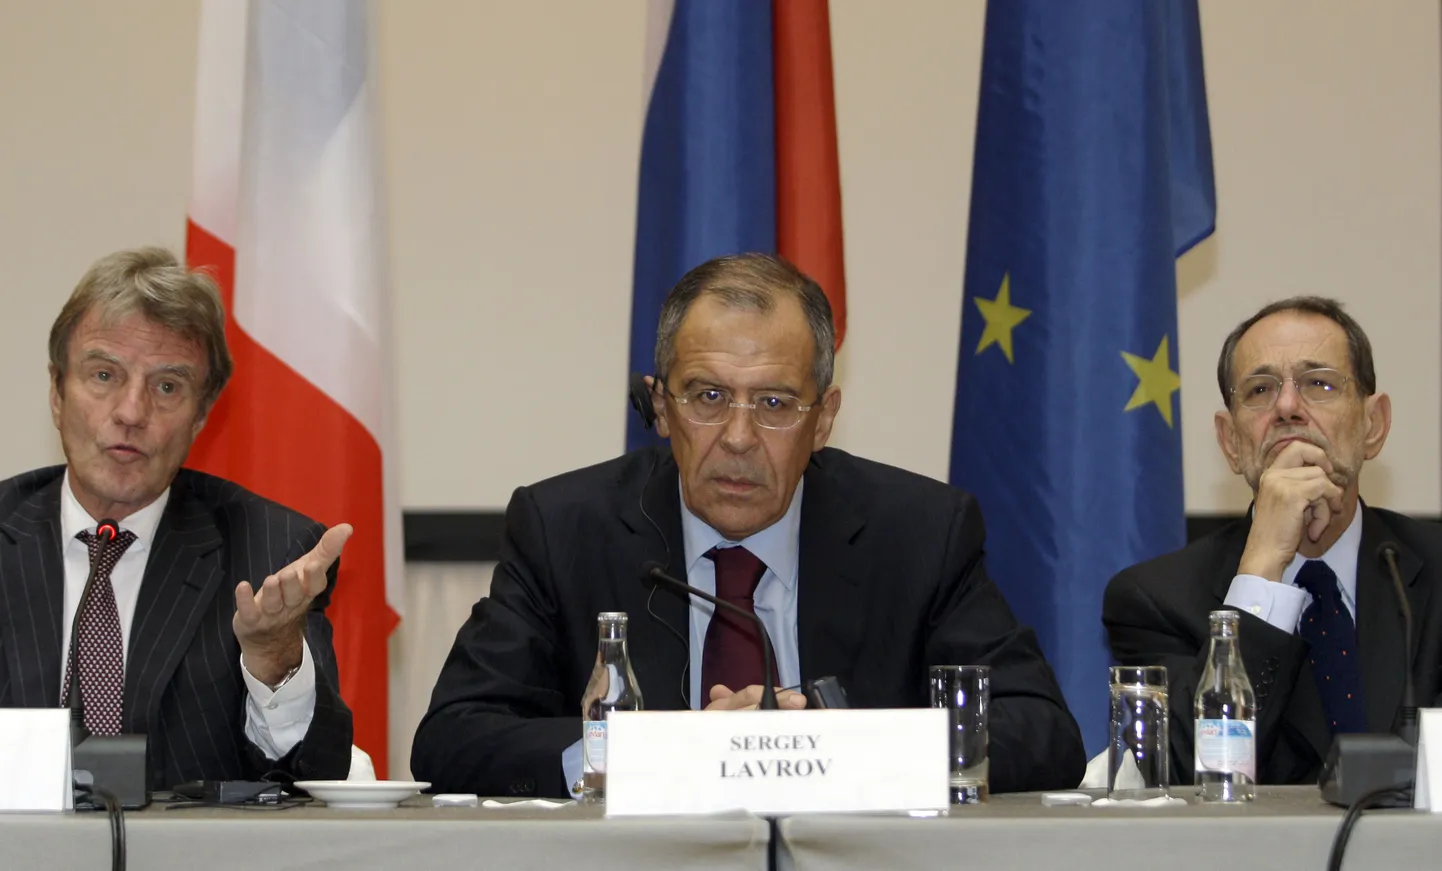 Vene välisminister Sergei Lavrov istumas Prantsuse kolleegi Bernard Kouchneri ja ELi ühtse välispoliitika juhi Javier Solana vahel.